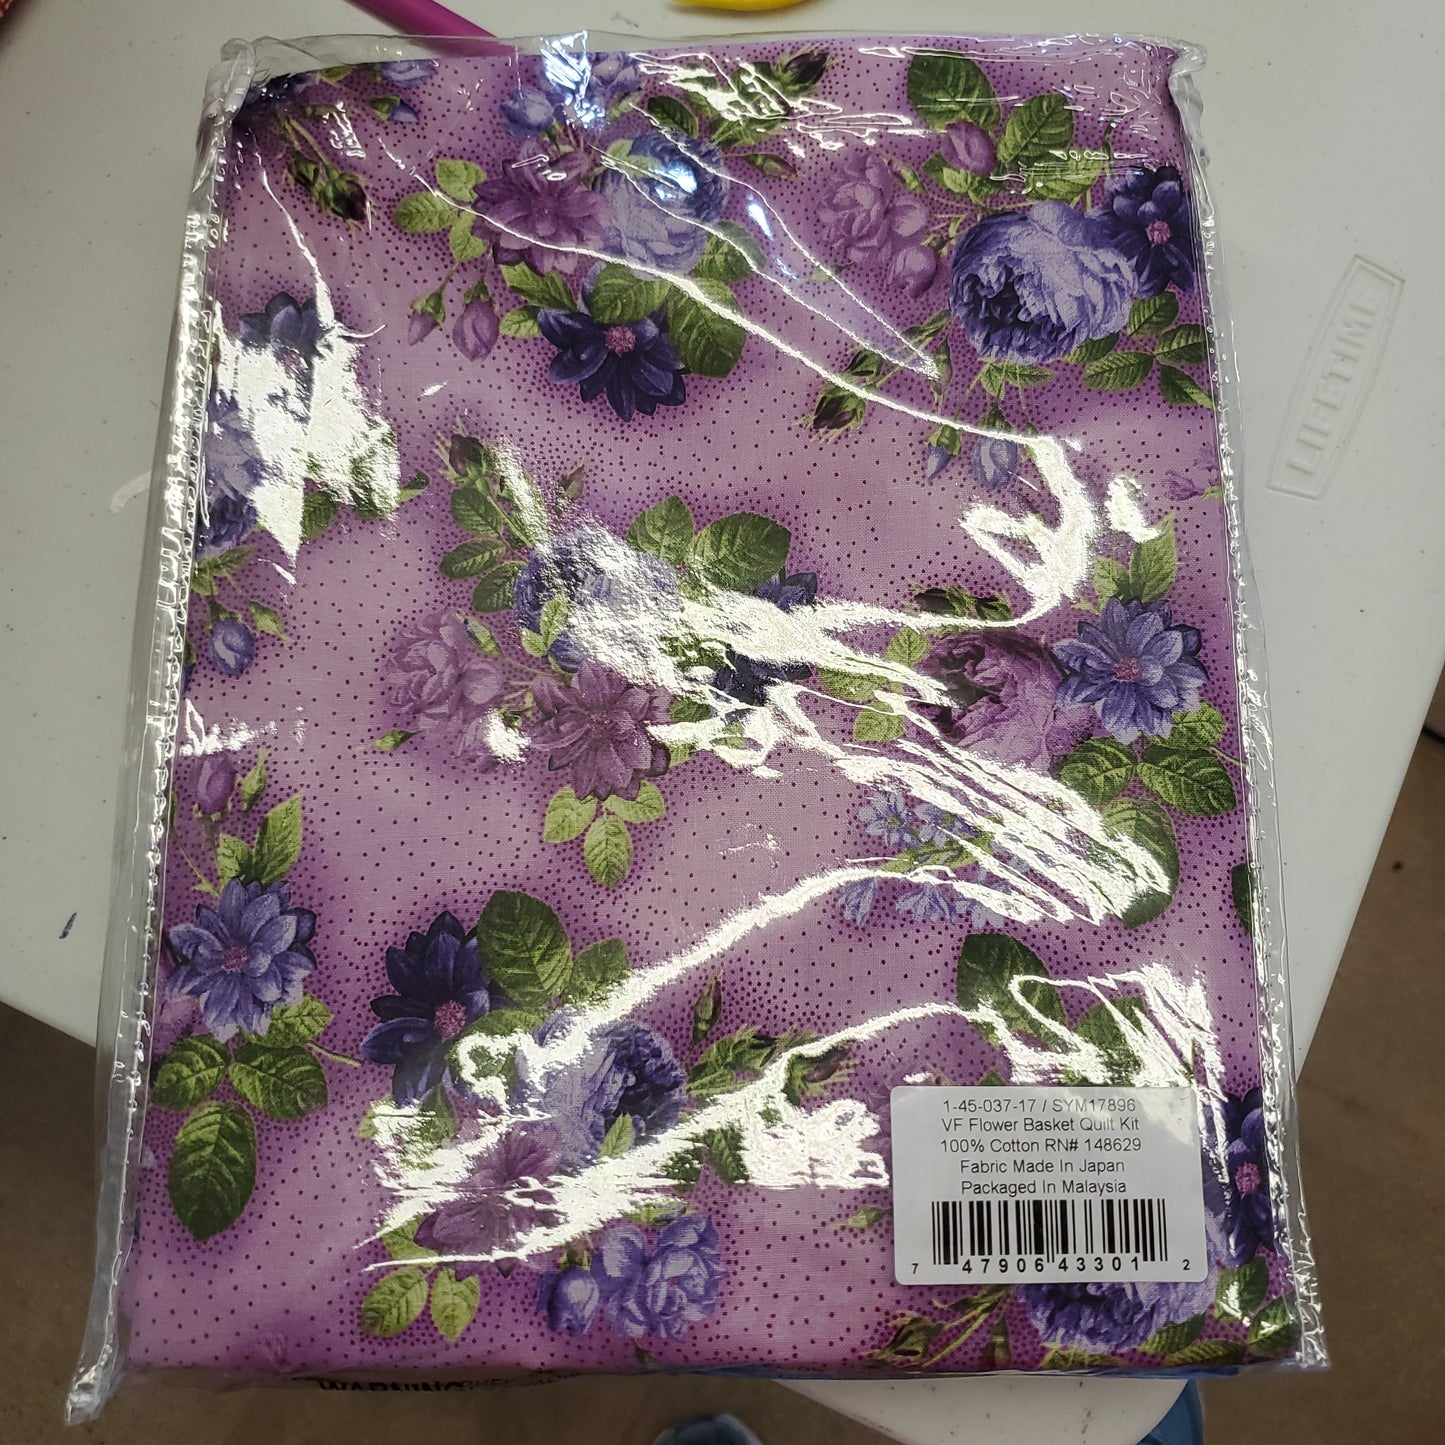 Kit - Flower Basket Quilt Kit - Boundless Violette Collection - No Pattern - 12.5 yards